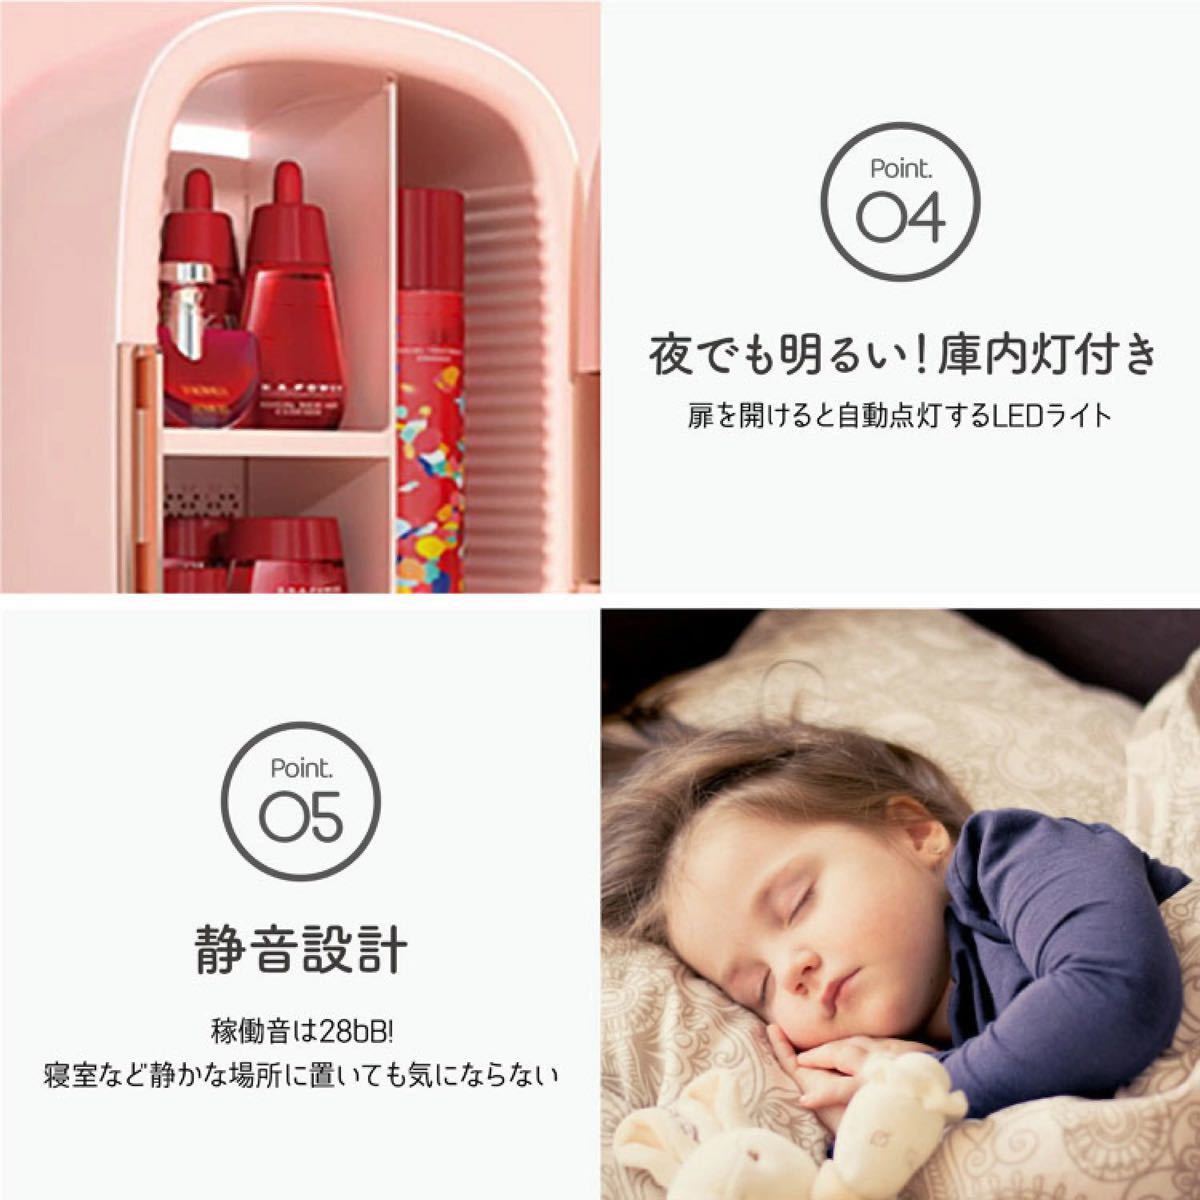 【新品】PINKTOP ピンクトップ コスメクーラー 化粧品 UVカット ミニ冷蔵庫 12L DMB-768-PK 光るハート